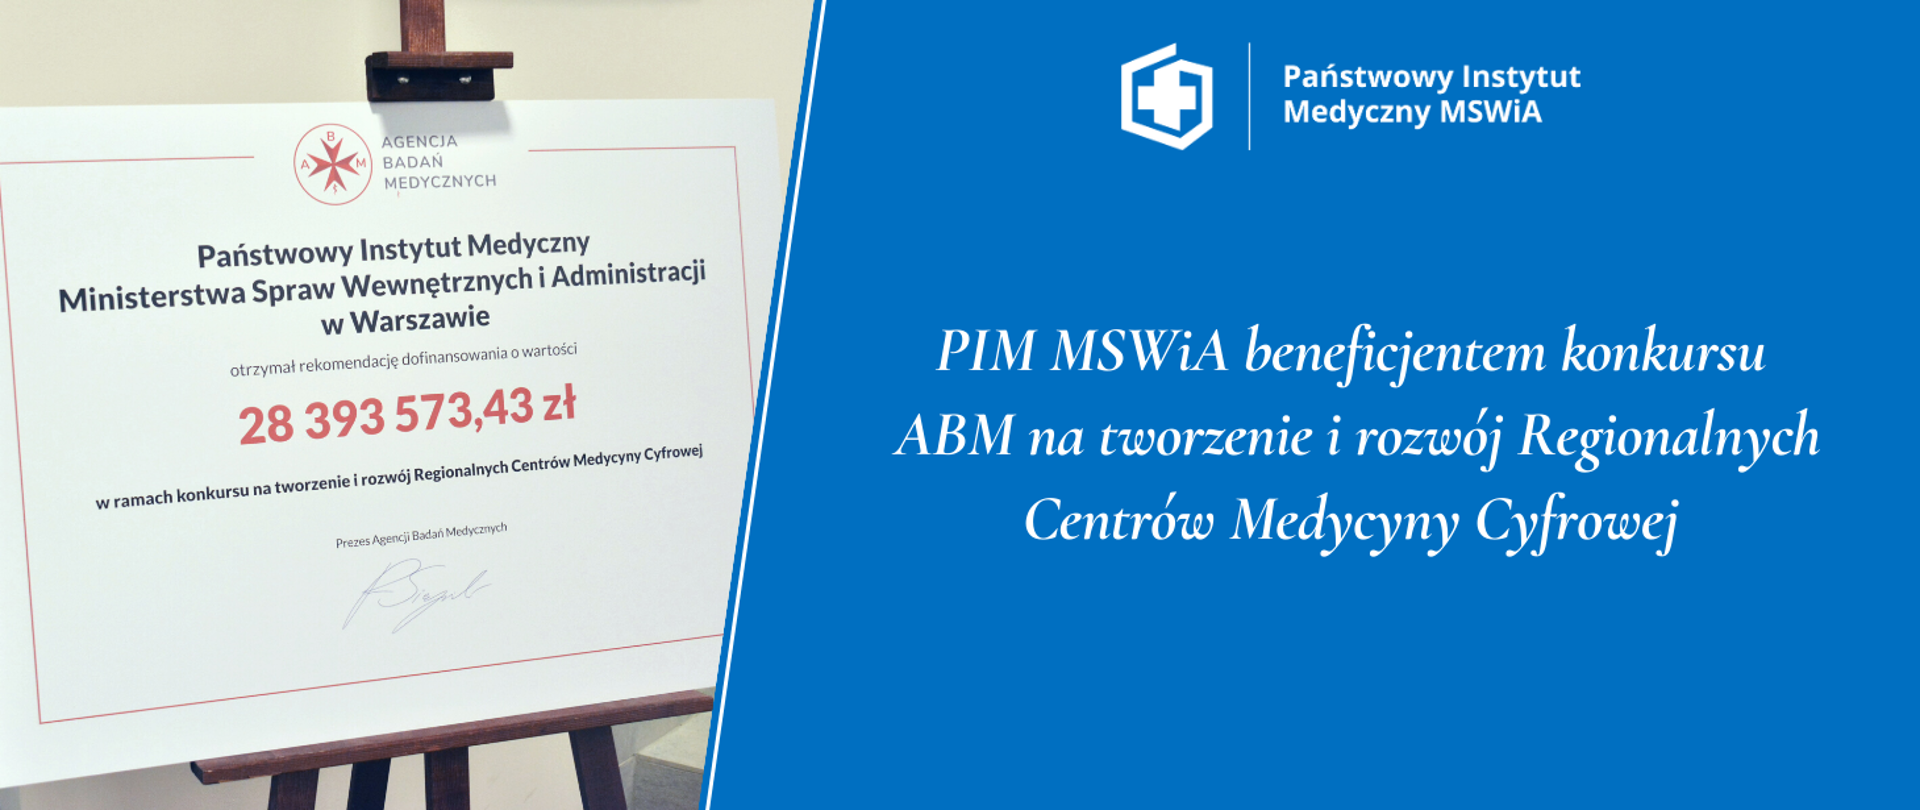 PIM MSWiA beneficjentem konkursu
ABM na tworzenie i rozwój Regionalnych Centrów Medycyny Cyfrowej